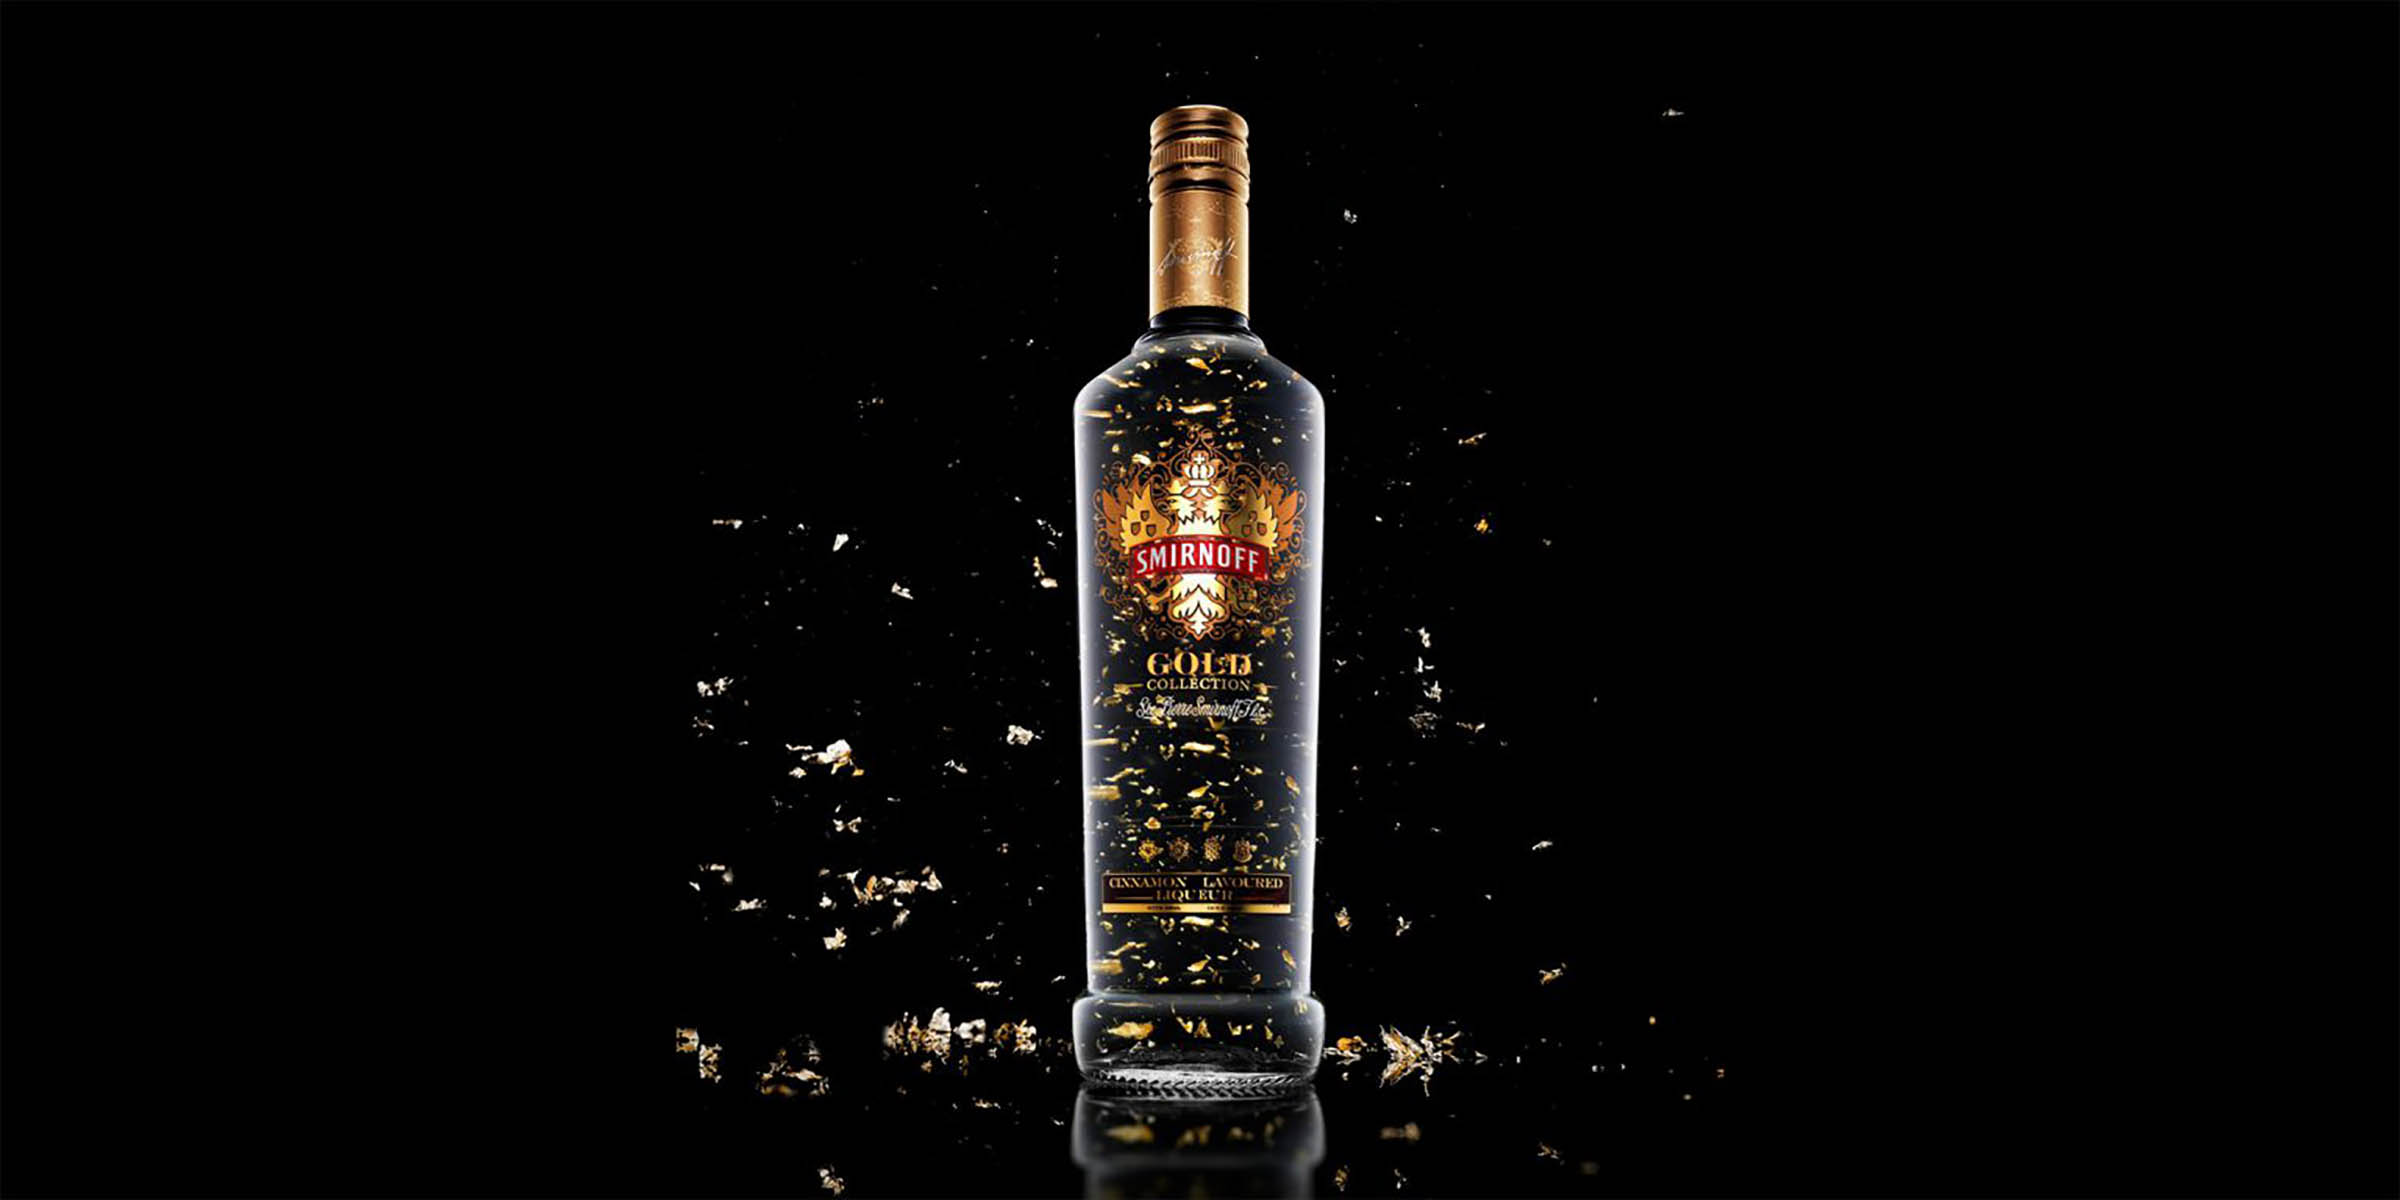 Buy Belvedere Vodka, 750mL, 80 proof Online India